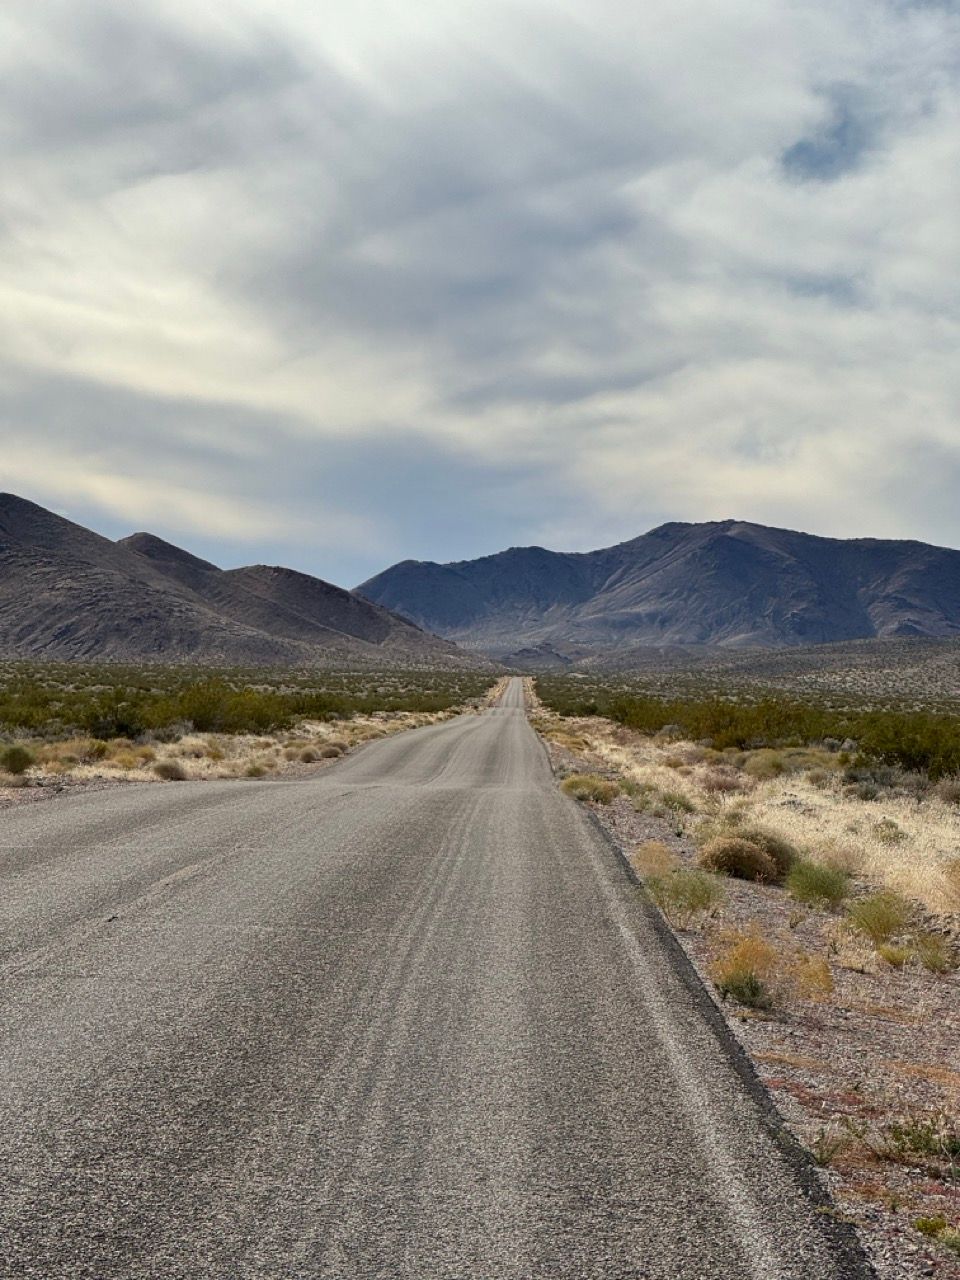 Bikepacking Death Valley in 3 days